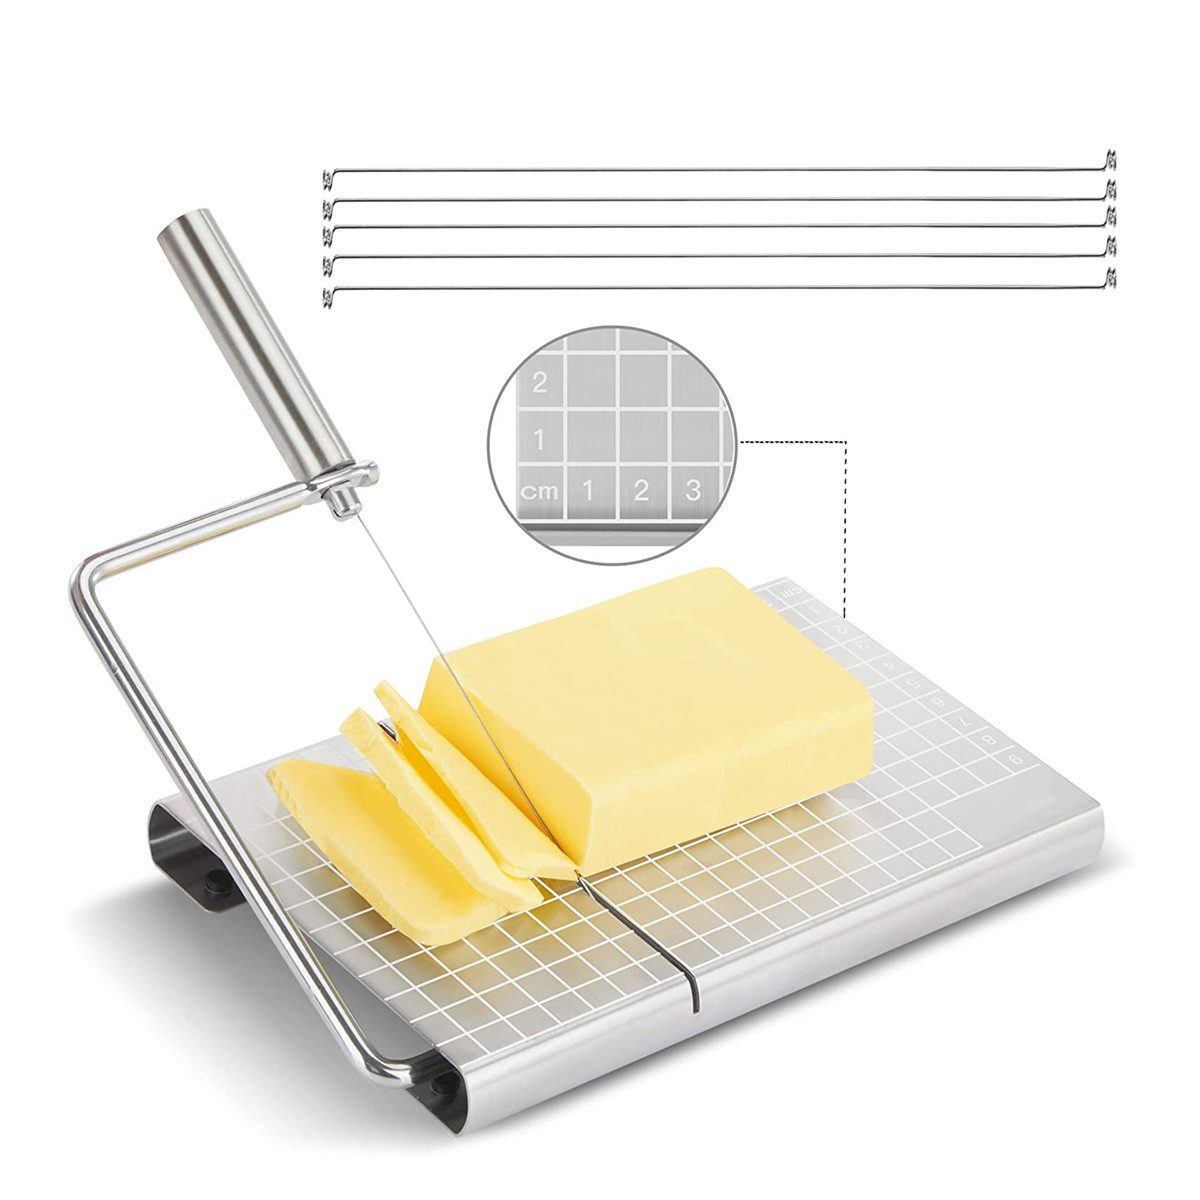 yozhiqu Käsehobel Käsehobel, Edelstahl, Draht Käseschneider für Käse Butter, mit variable Schnittlinien und abgestufter Platte (12 x 21 cm)